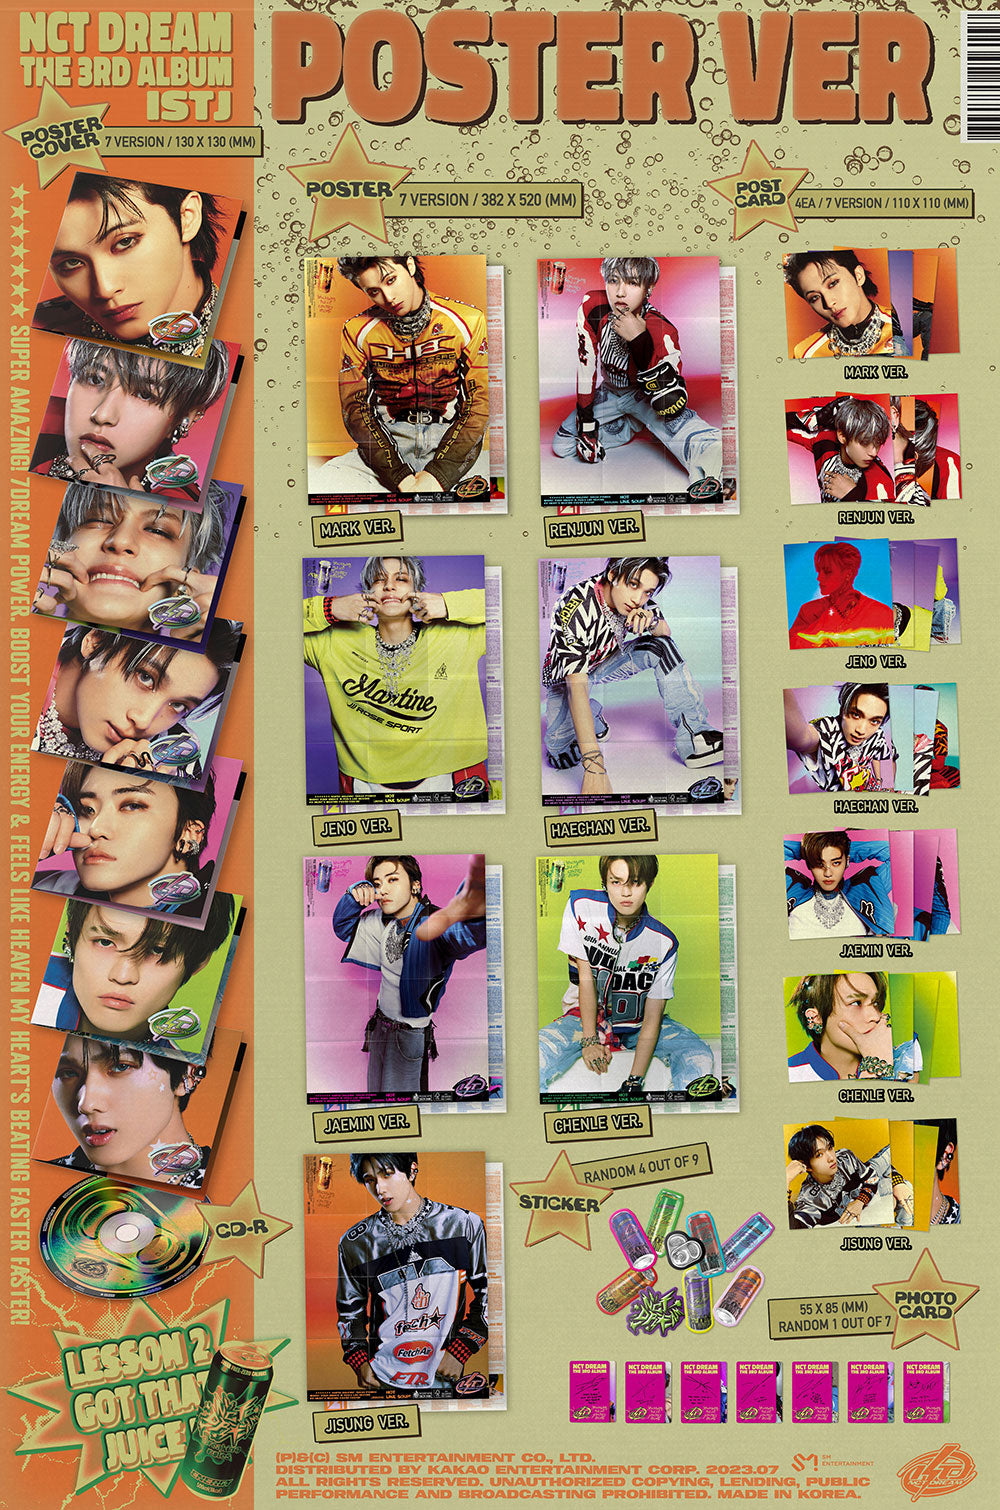 NCT DREAM - ISTJ (3rd Album) Poster Ver.